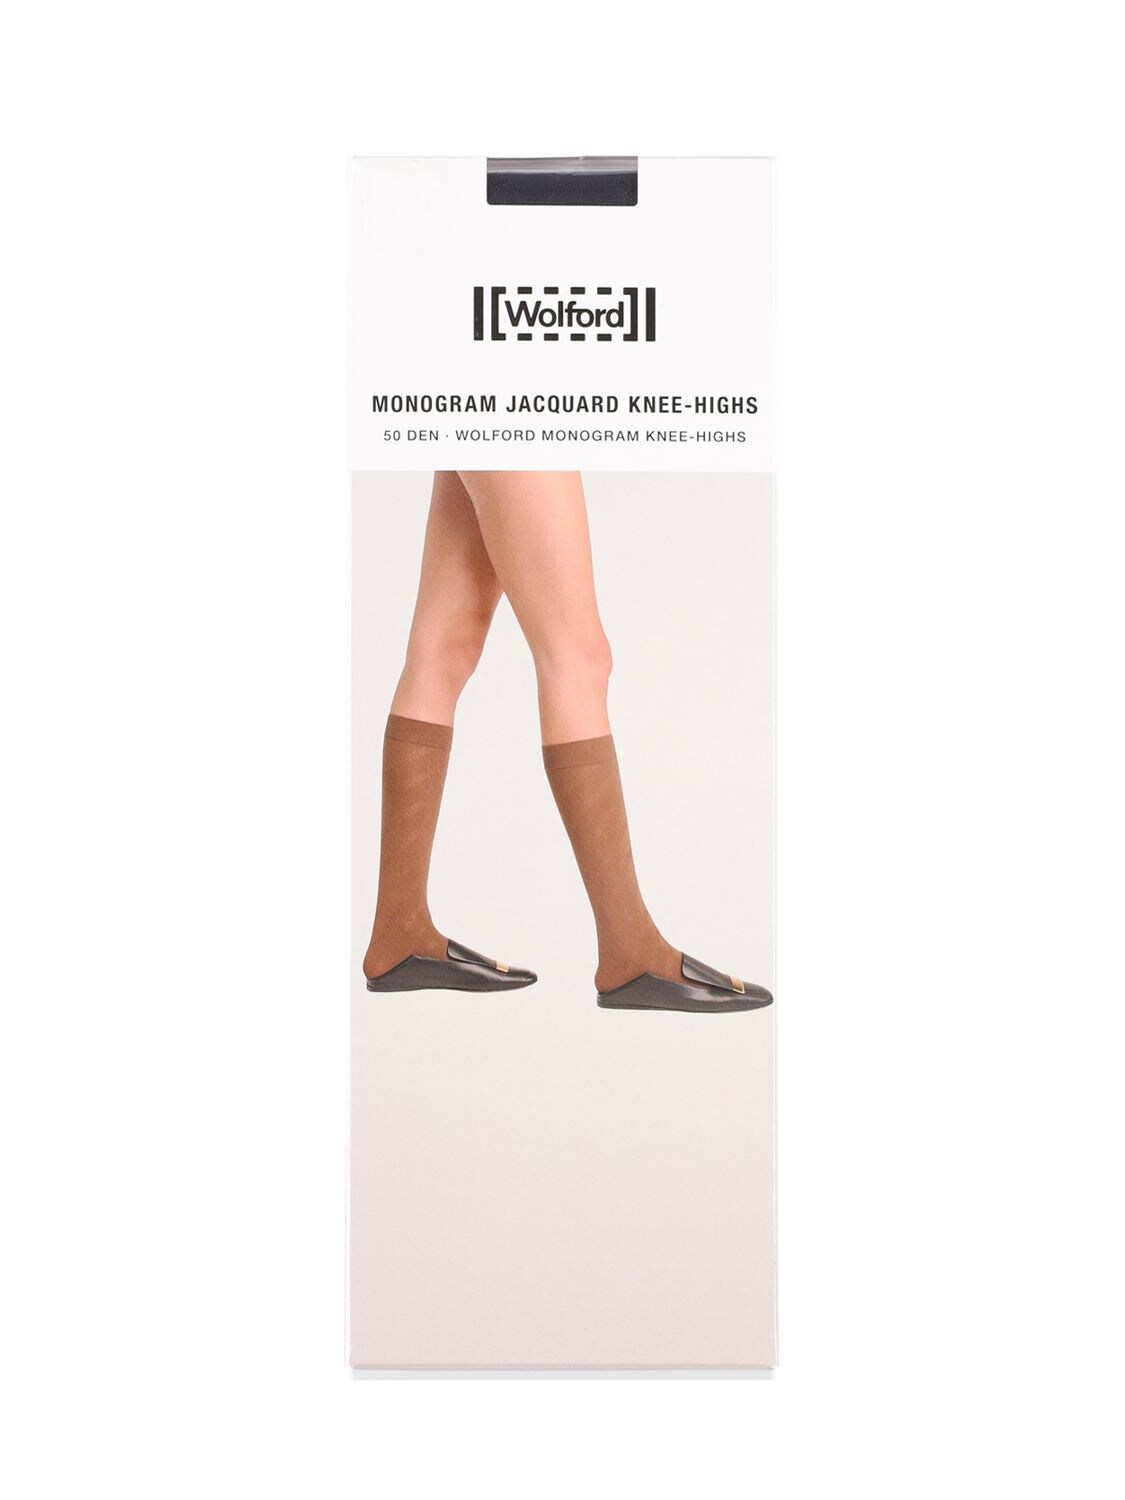 Monogram Jacquard Knee-high Socks – WOMEN > LINGERIE > HOSIERY